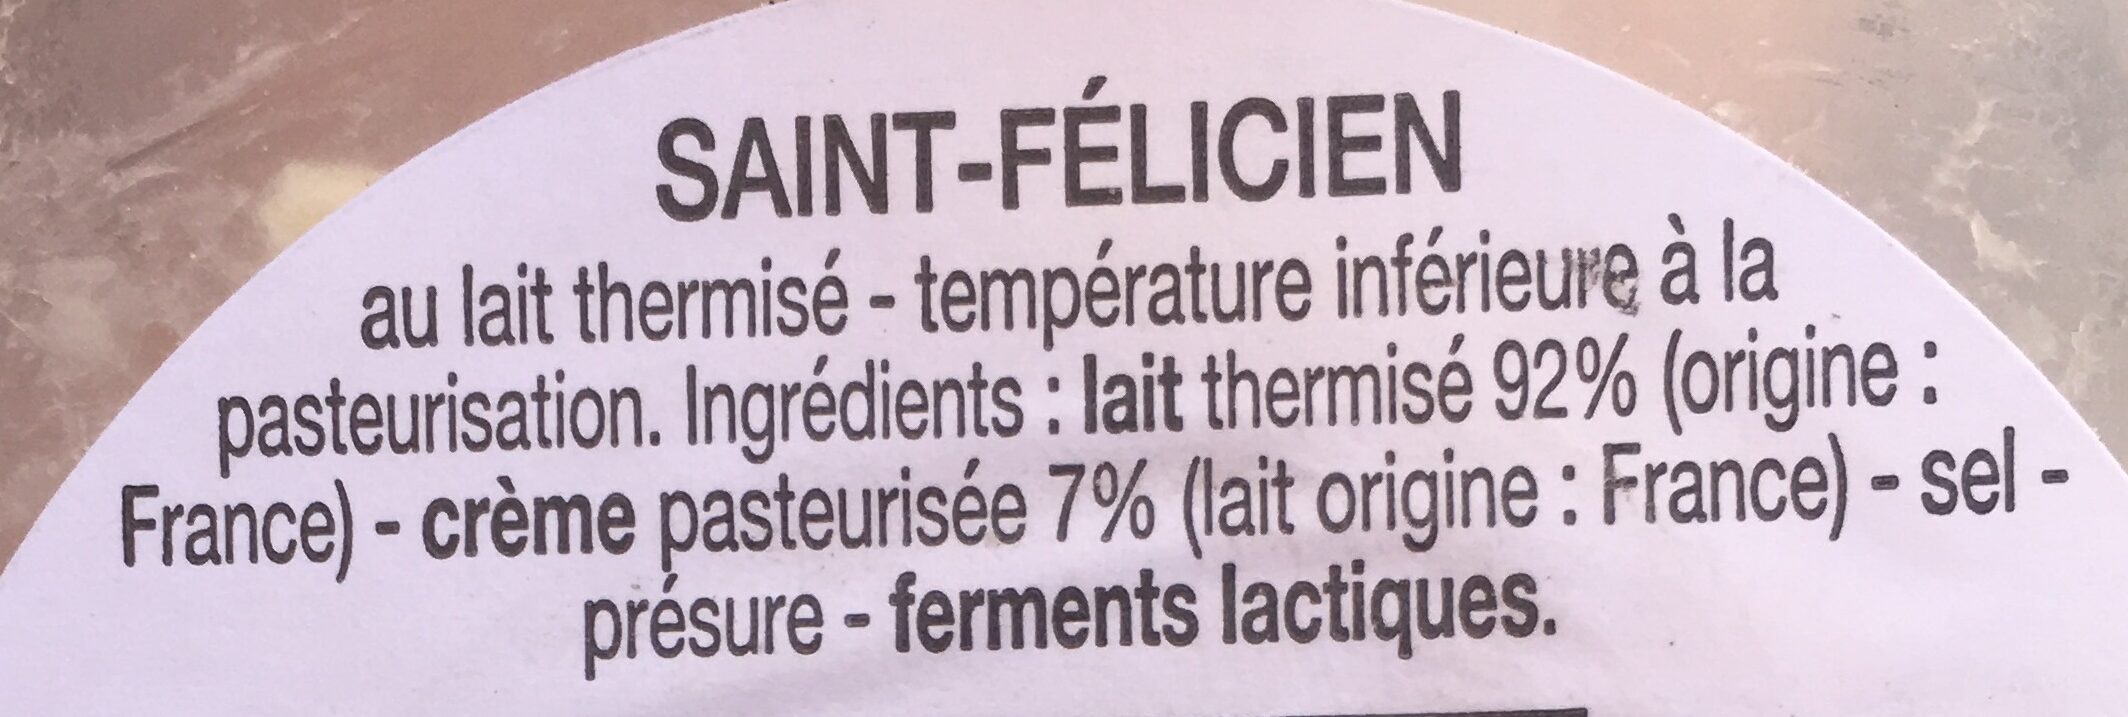 Saint-Félicien - Ingrédients